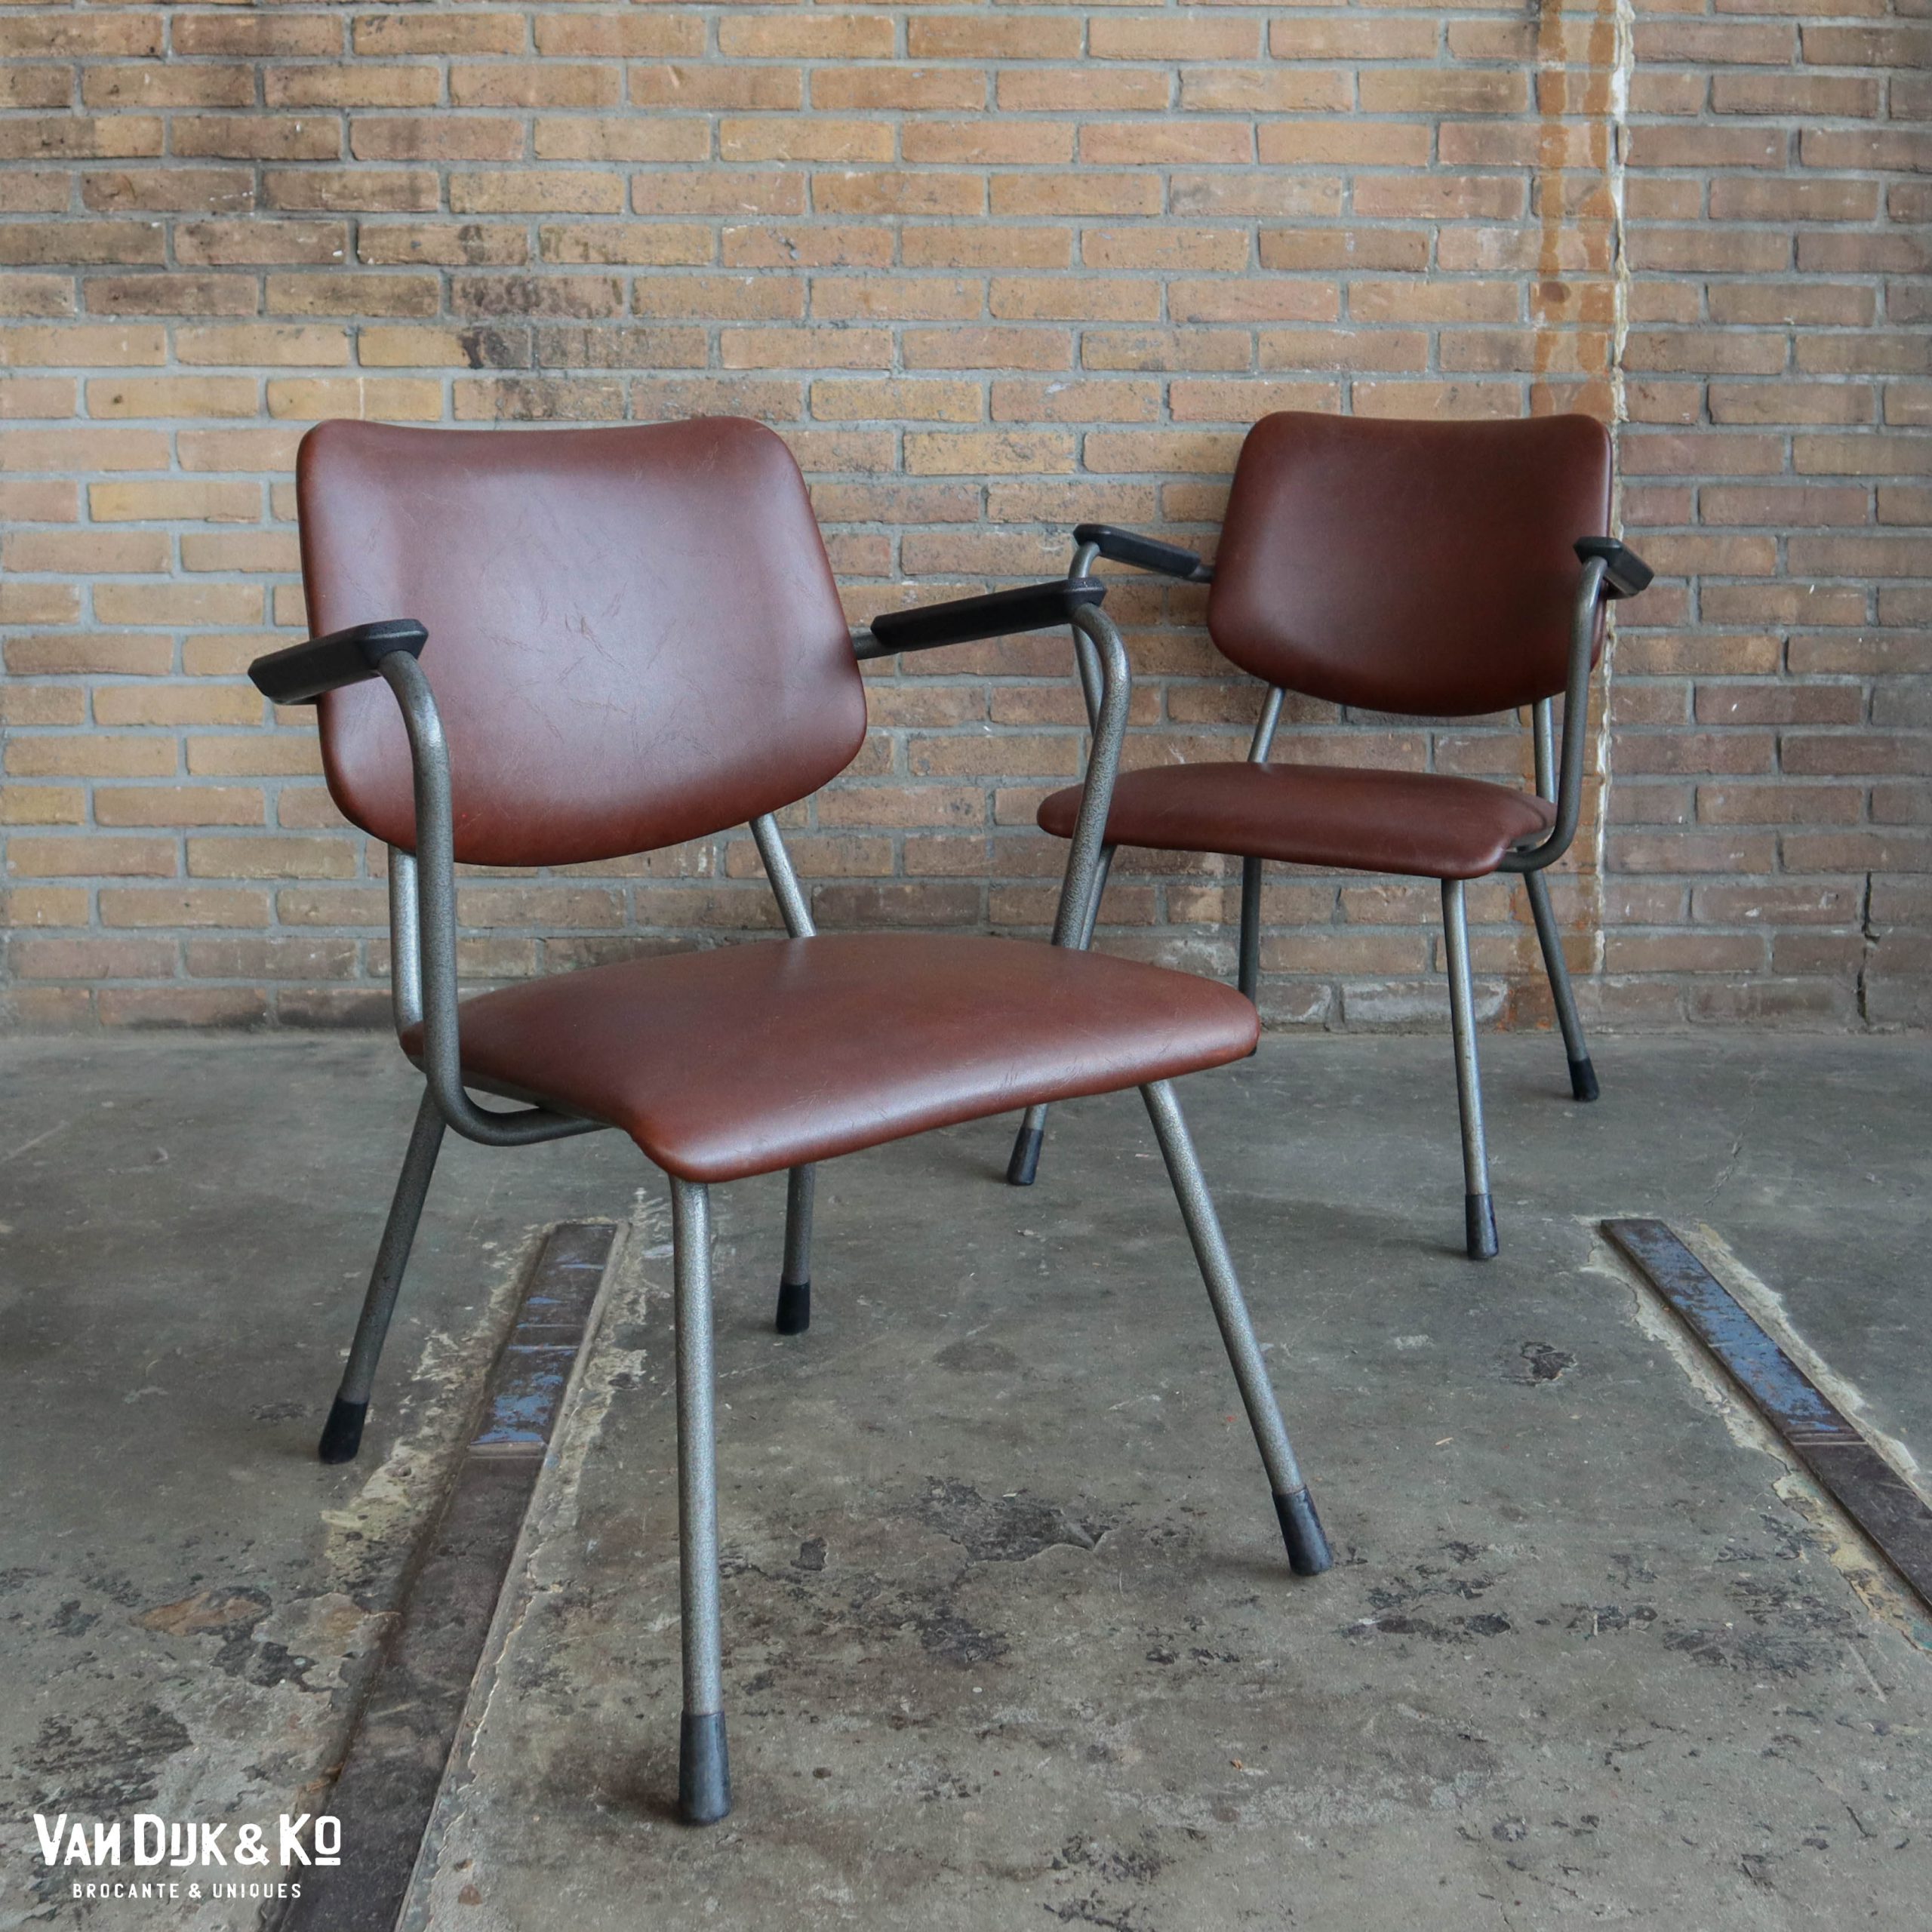 Bewust worden eenzaam alleen Vintage design stoel – Gispen » Van Dijk & Ko